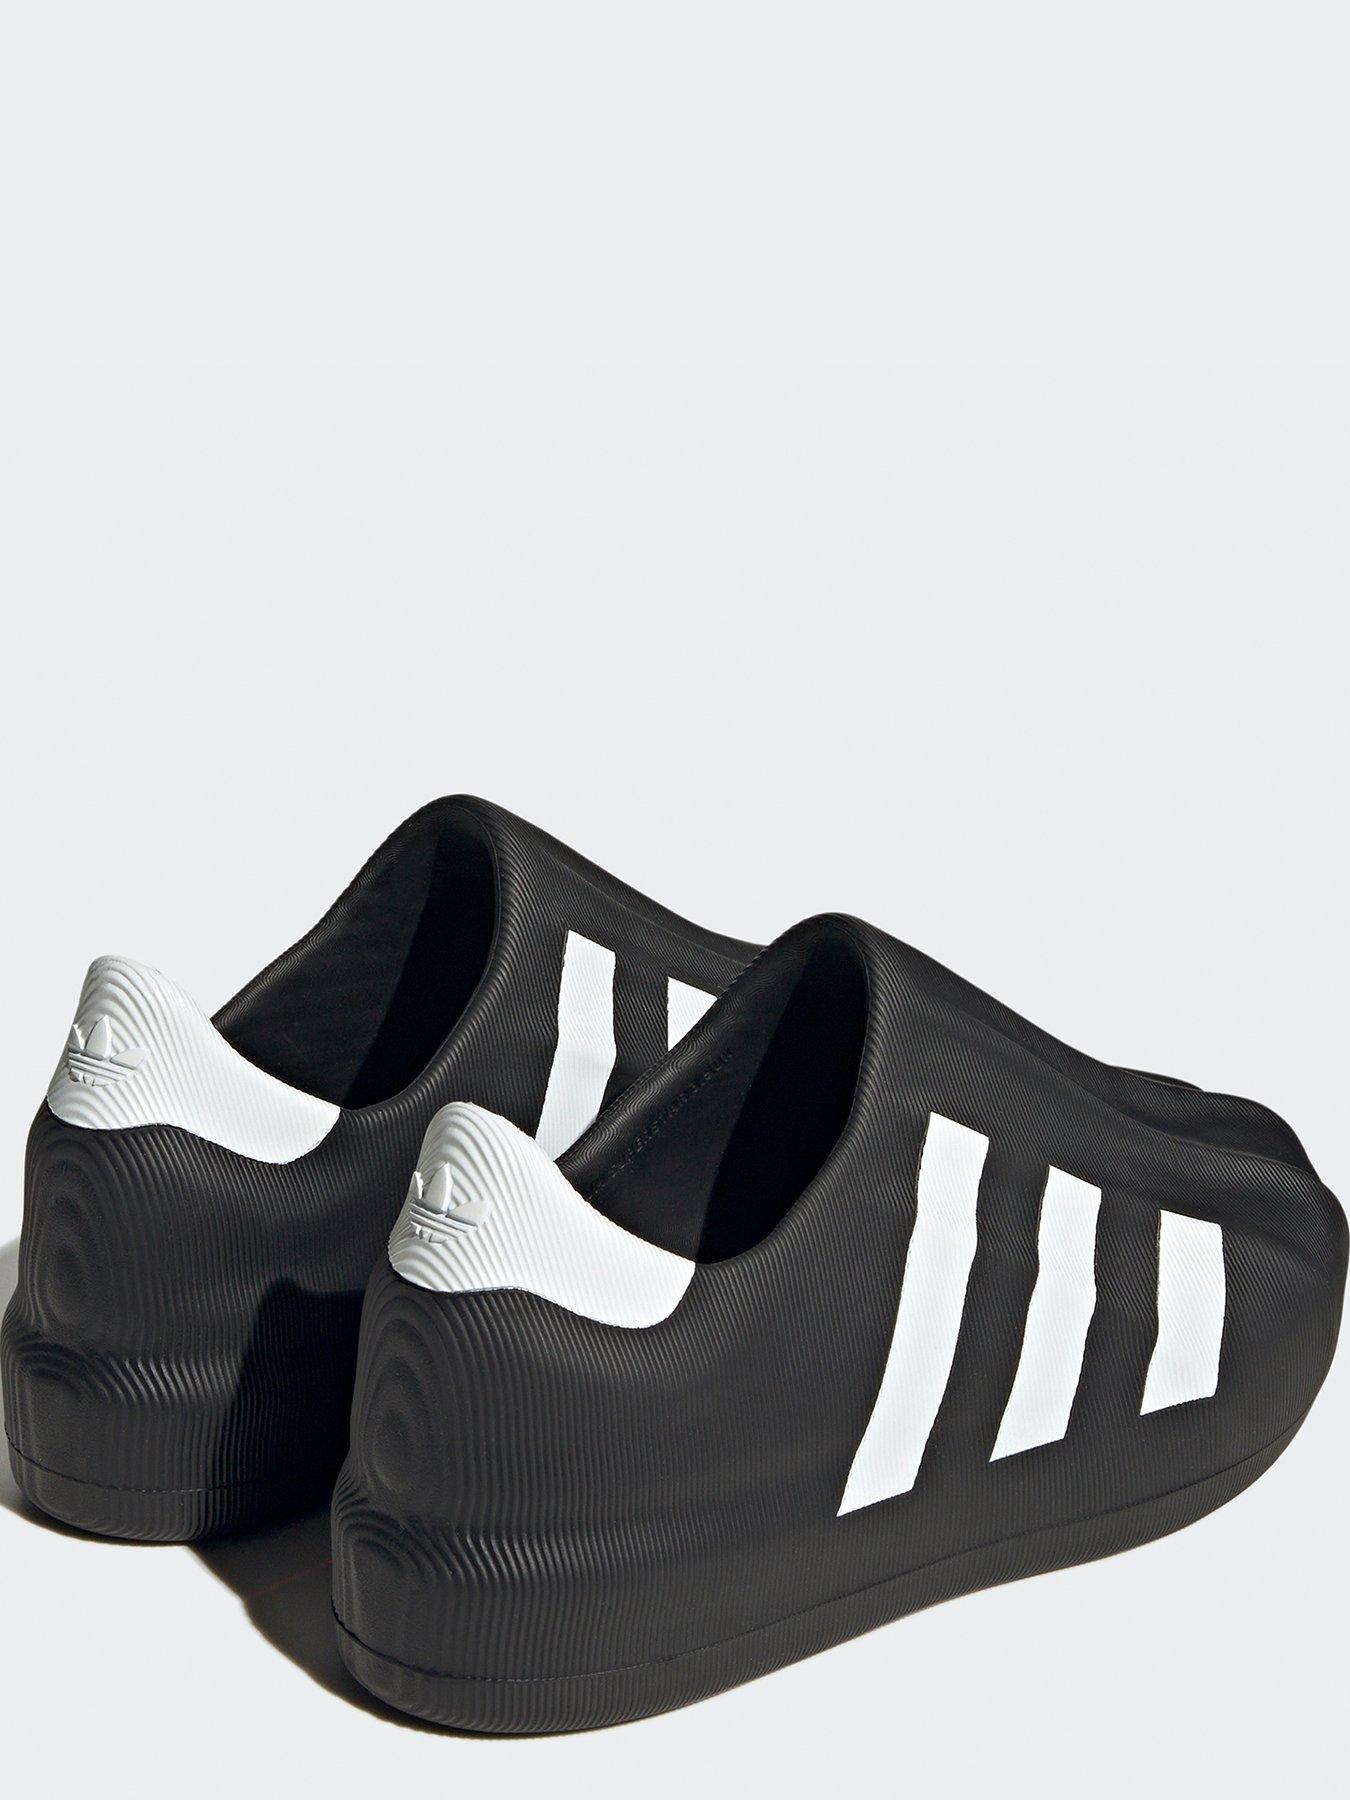 adidas Originals Unisex Junior Adifom Superstar Trainers - White/Black ...